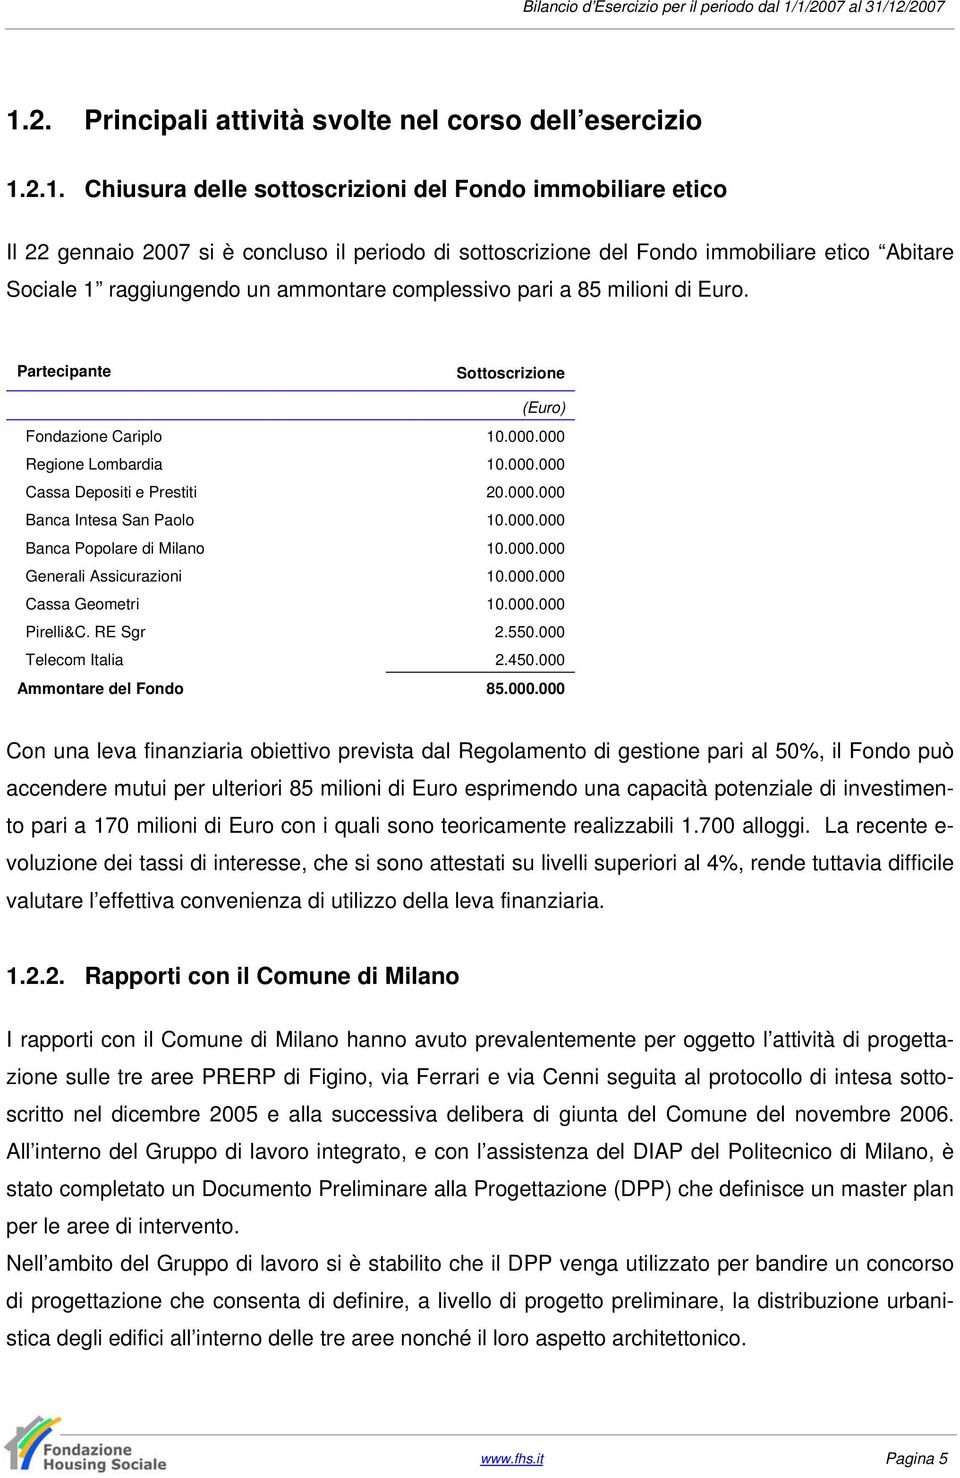 000.000 Banca Intesa San Paolo 10.000.000 Banca Popolare di Milano 10.000.000 Generali Assicurazioni 10.000.000 Cassa Geometri 10.000.000 Pirelli&C. RE Sgr 2.550.000 Telecom Italia 2.450.